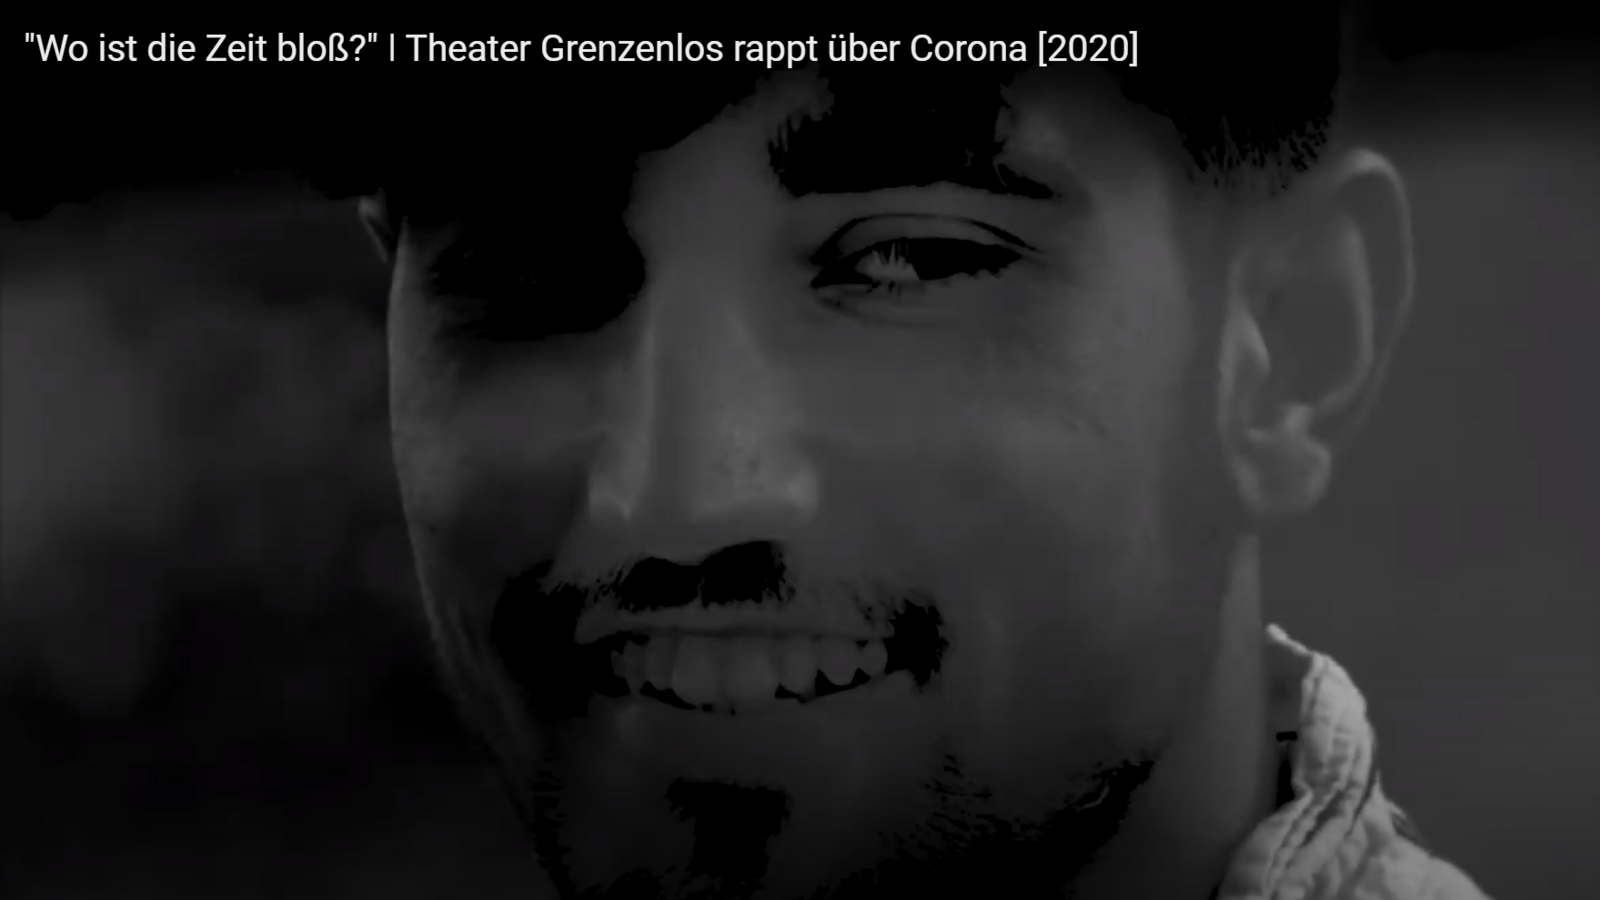 Auf dem Bild sieht man verschwommen einen jungen Mann in schwarz-weiß, der lachend auf die Seite sieht. Es ist ein Ausschnitt des Musikvideos zum Rap "Zeitlos", den das Theater Grenzenlos während der Corona-Pandemie aufnahm.